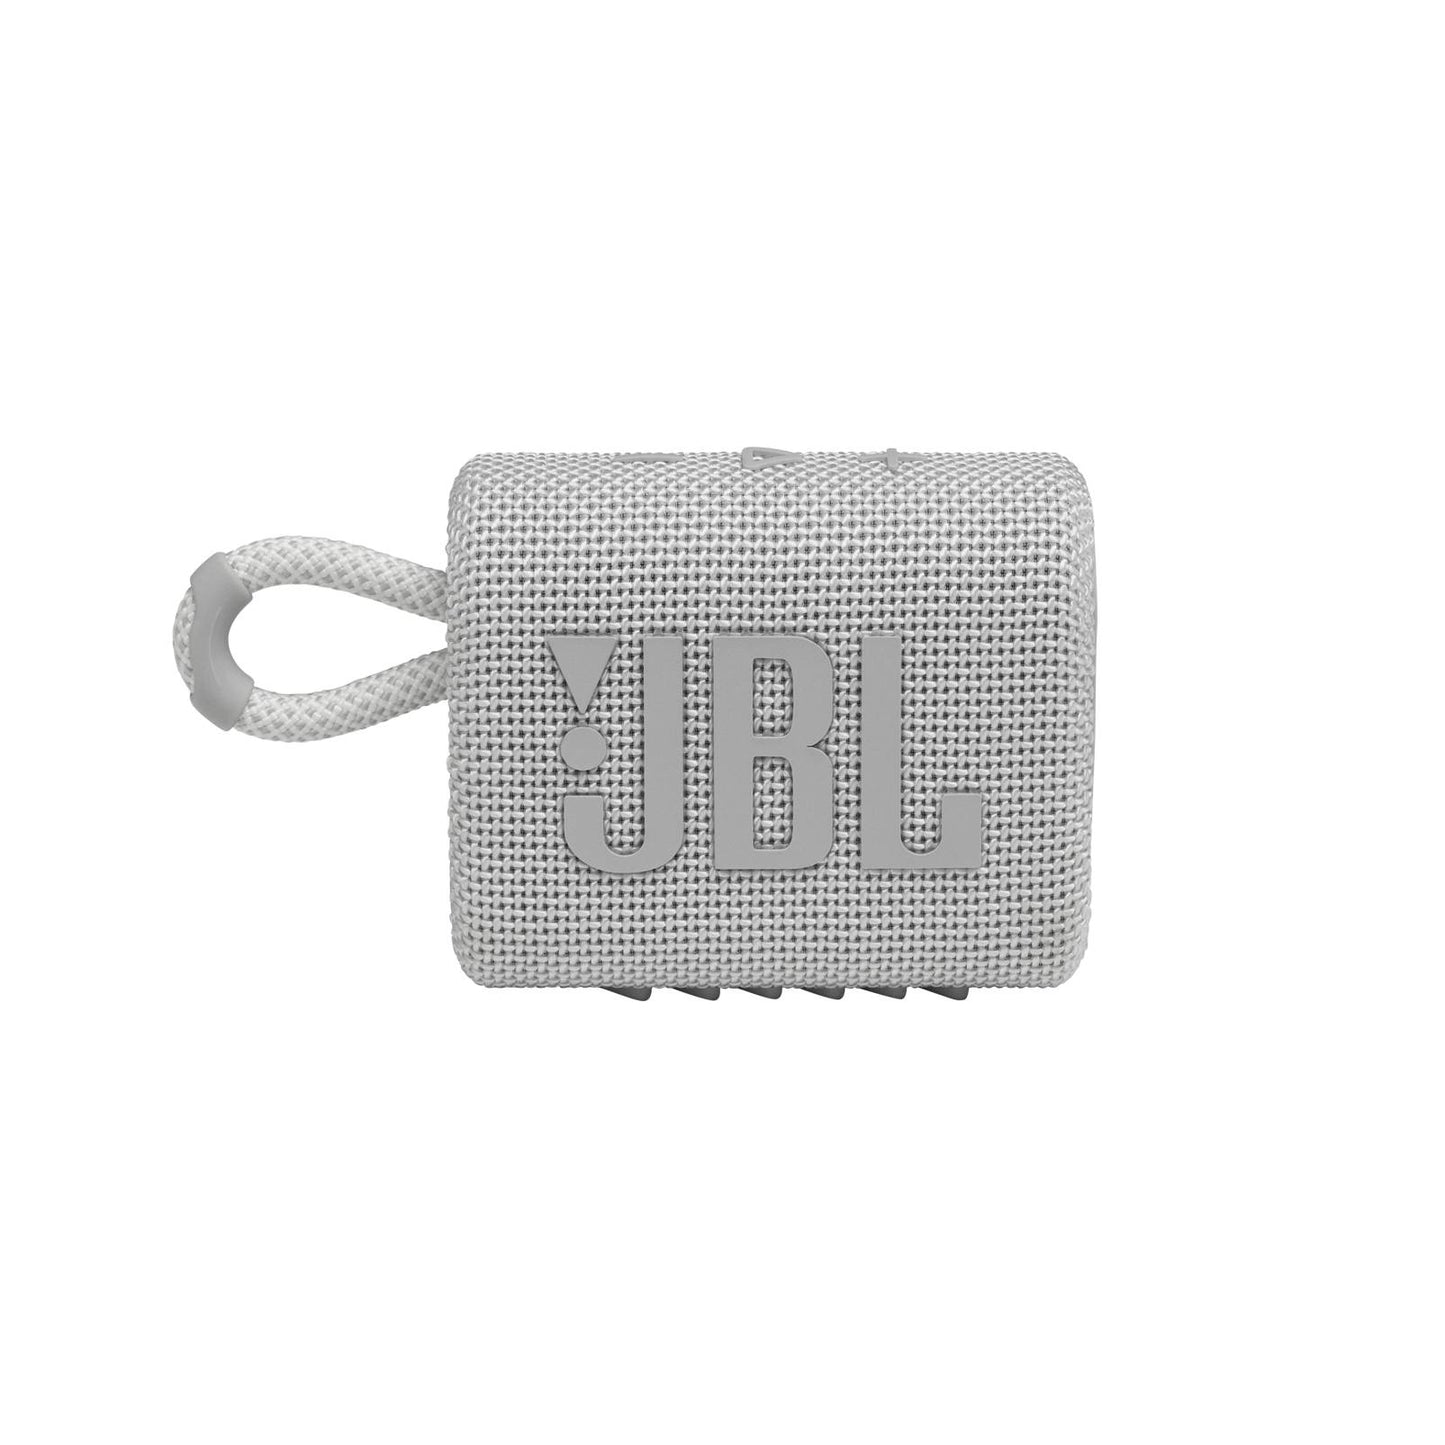 JBL GO 3 Speaker Bluetooth Portatile, Cassa Altoparlante Wireless con Design Compatto, Resistente ad Acqua e Polvere IPX67, fino a 5 h di Autonomia, USB, Bianca